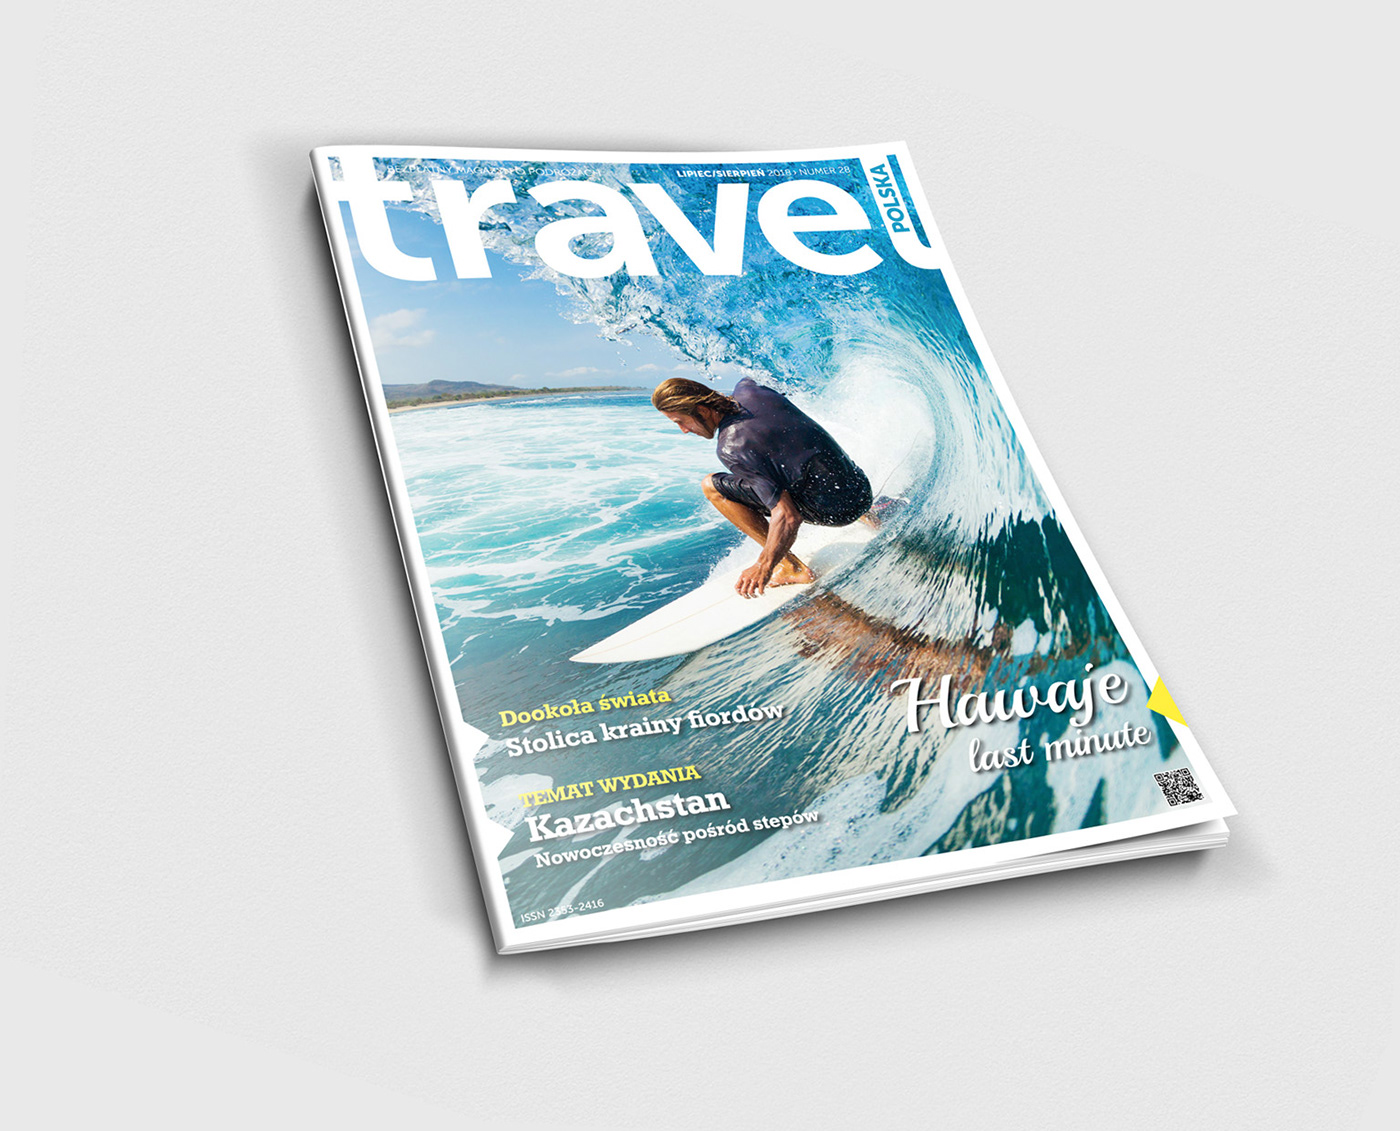 Travel magazine magazyn Pismo miesiecznik